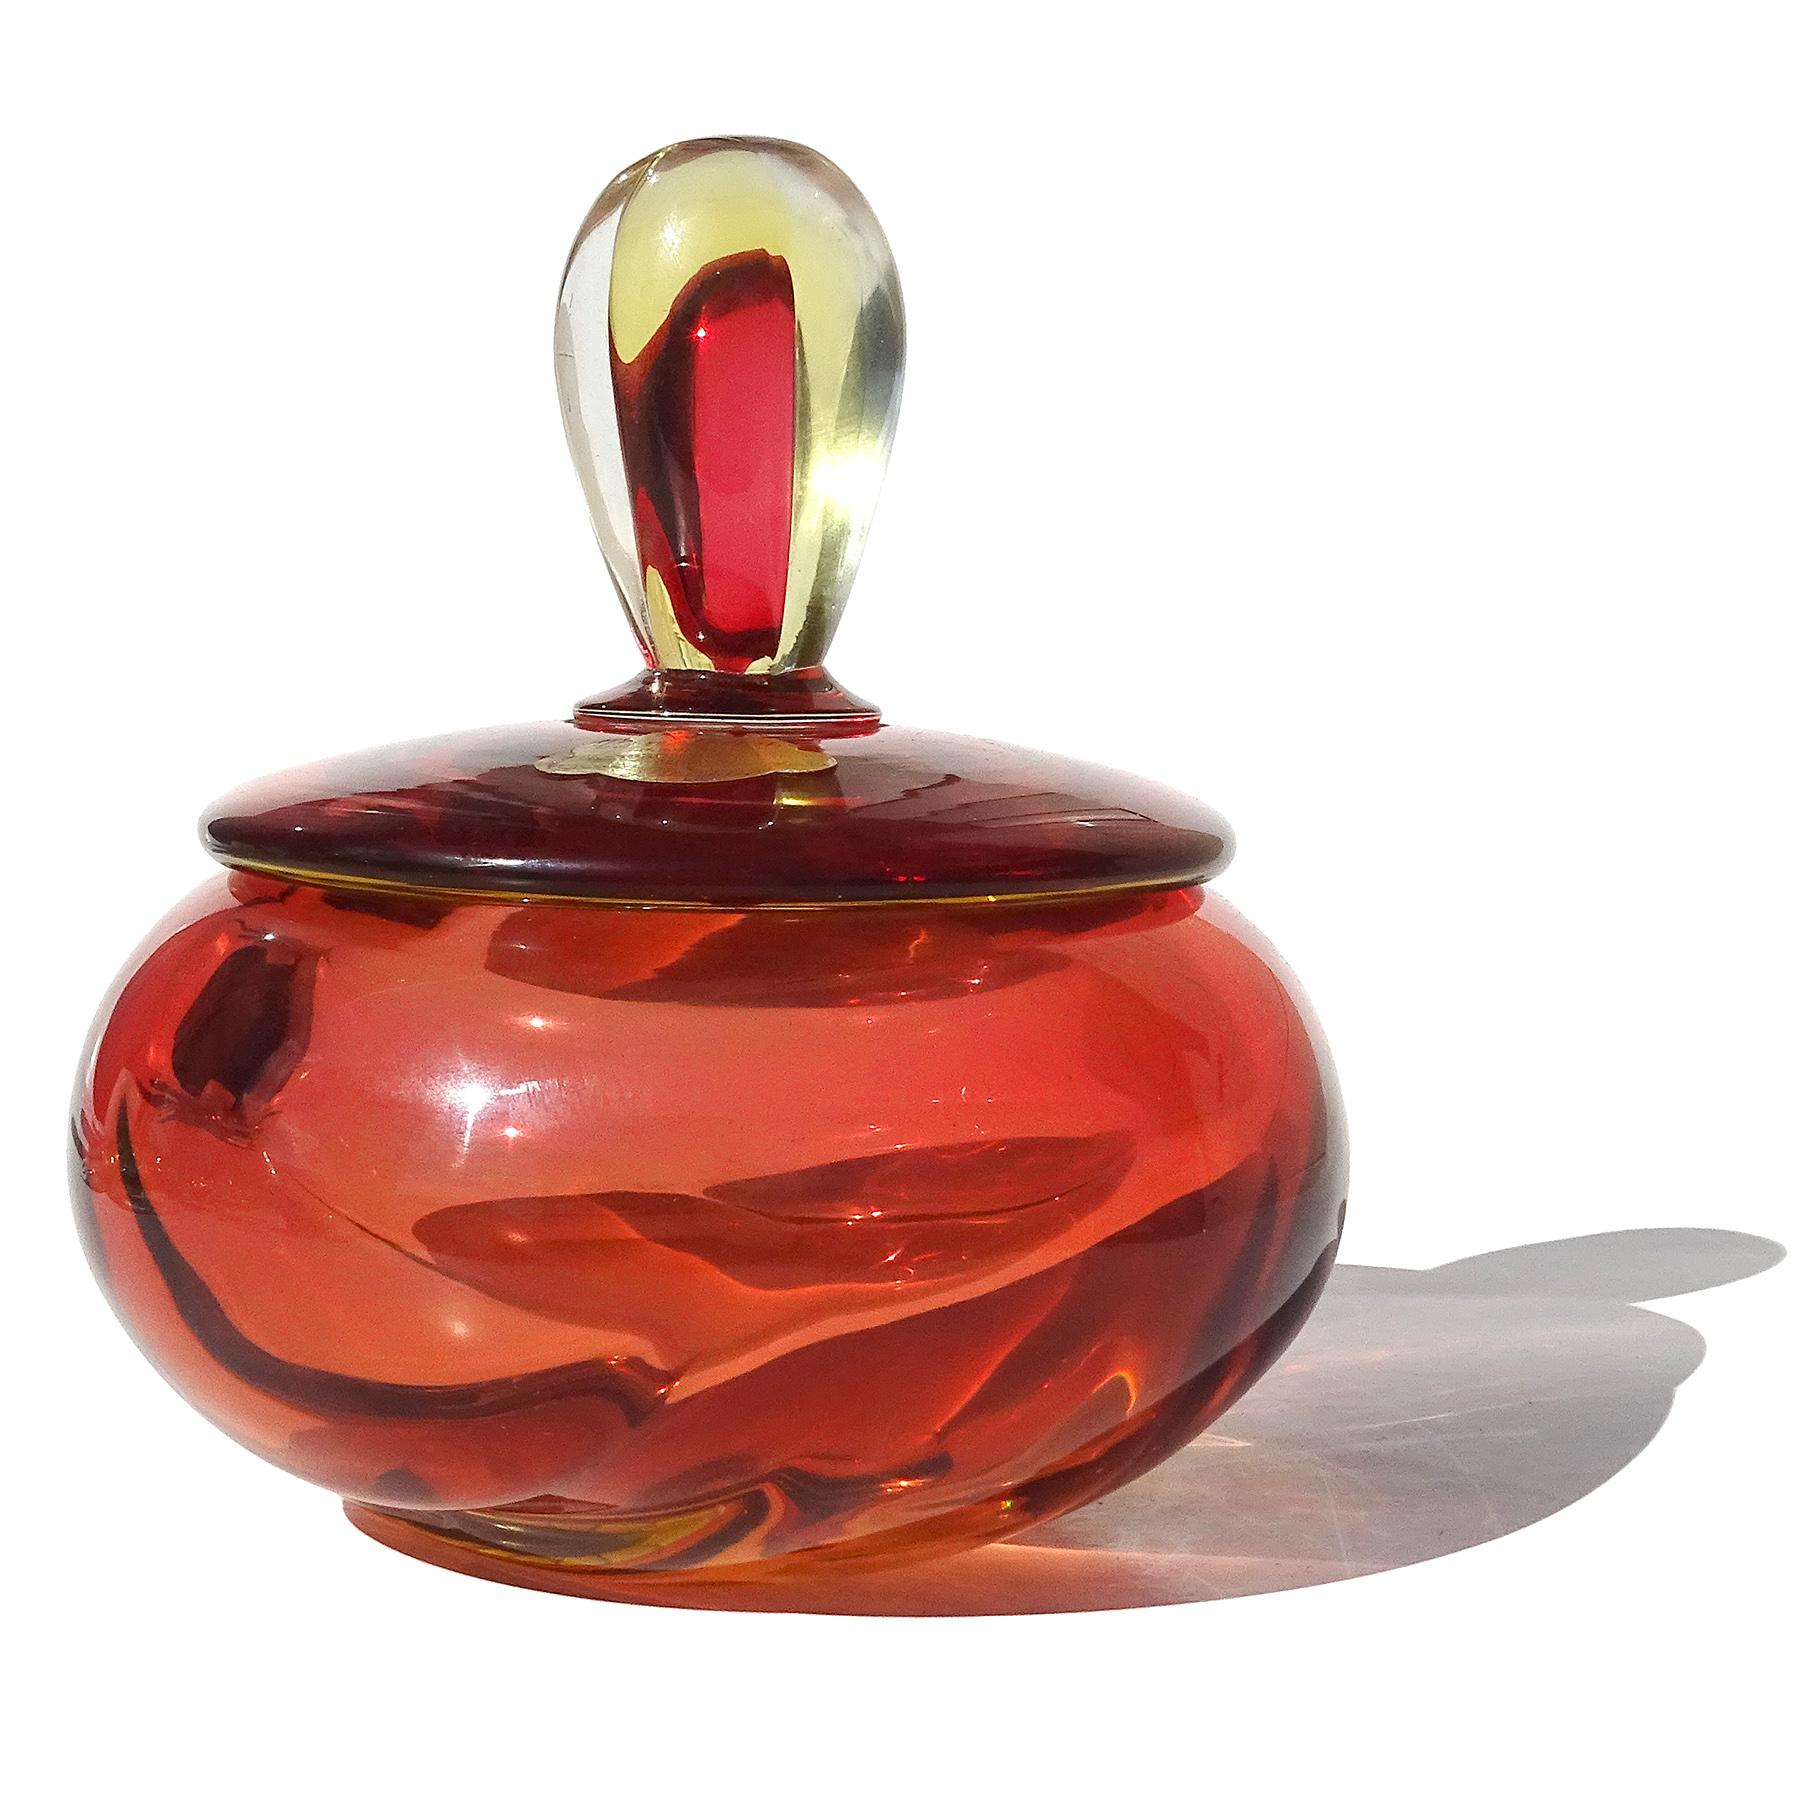 Magnifique boîte à bijoux en verre soufflé à la main Sommerso de Murano, rouge, orange, jaune et transparent. Attribué au designer Alfredo Barbini, vers les années 1950. Il est publié dans le catalogue Barbini. Le couvercle porte encore le Label